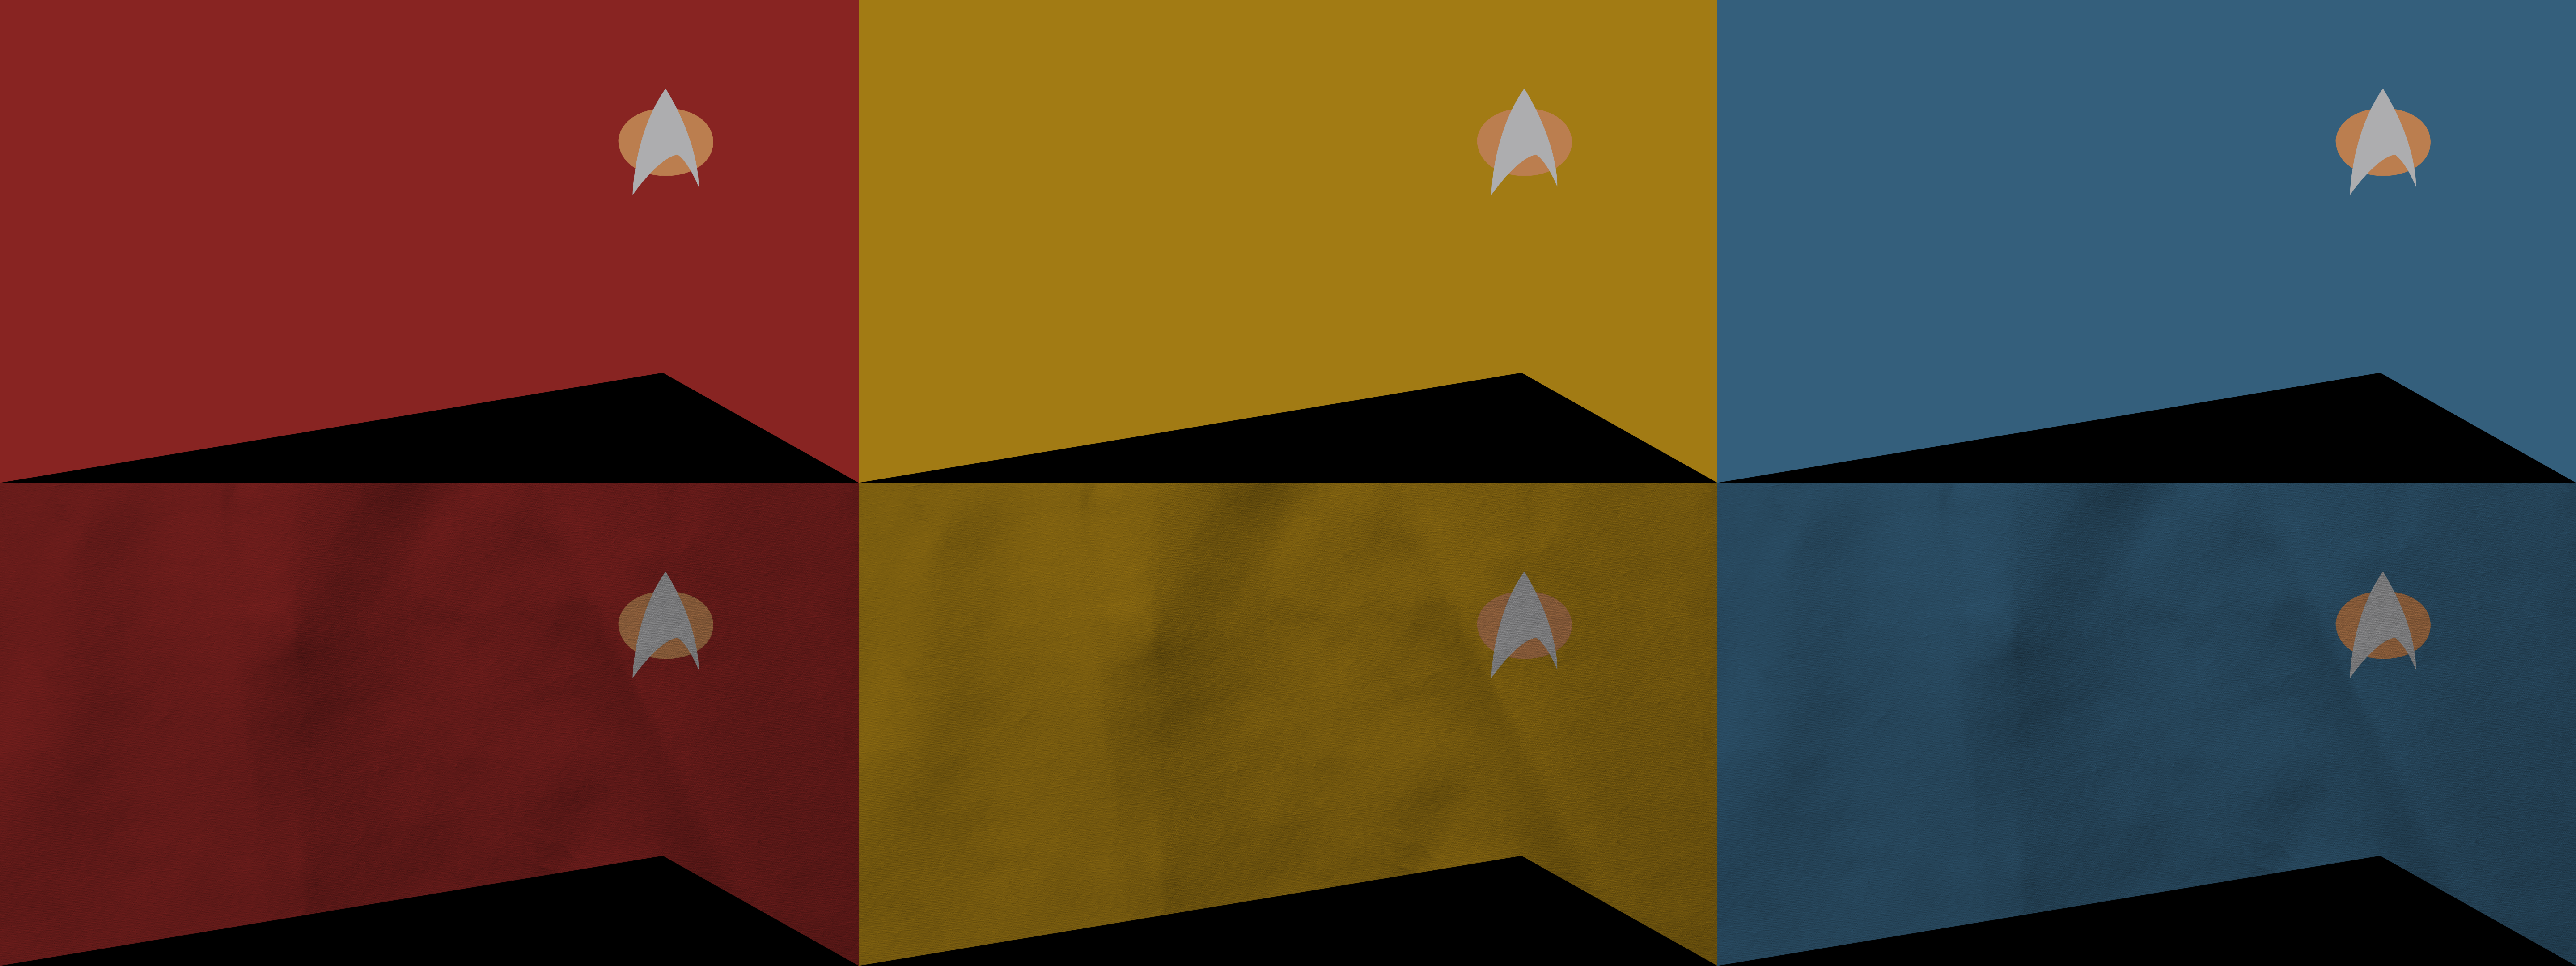 v1.1 Star Trek: Next Generation Wallpaper